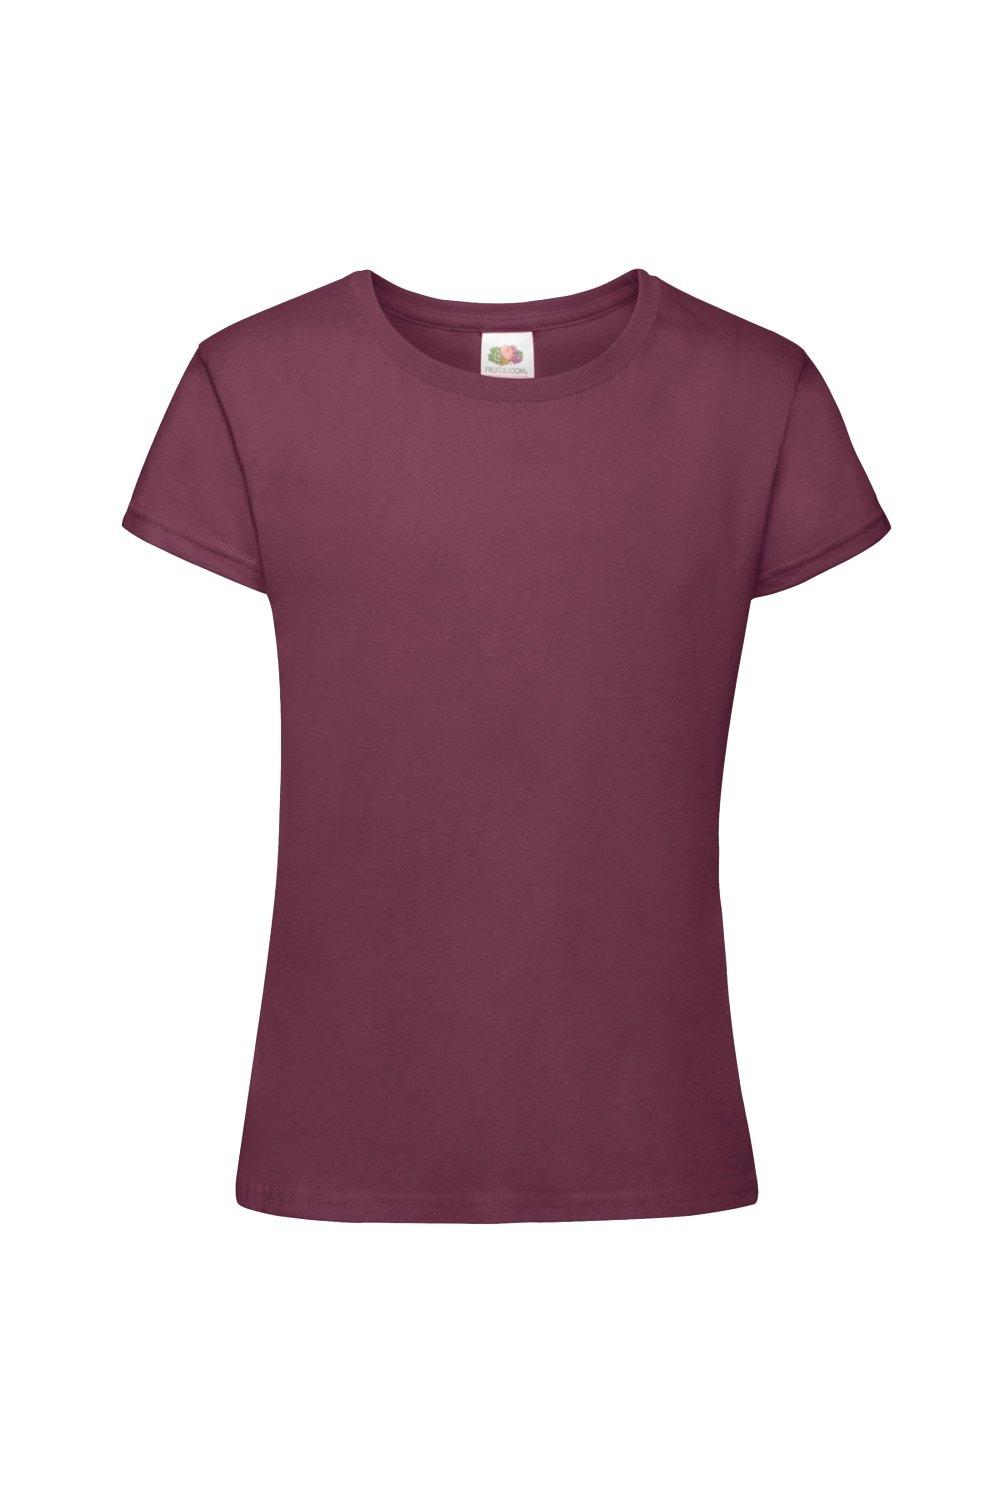 Sofspun Short Sleeve T-Shirt (Pack of 2)